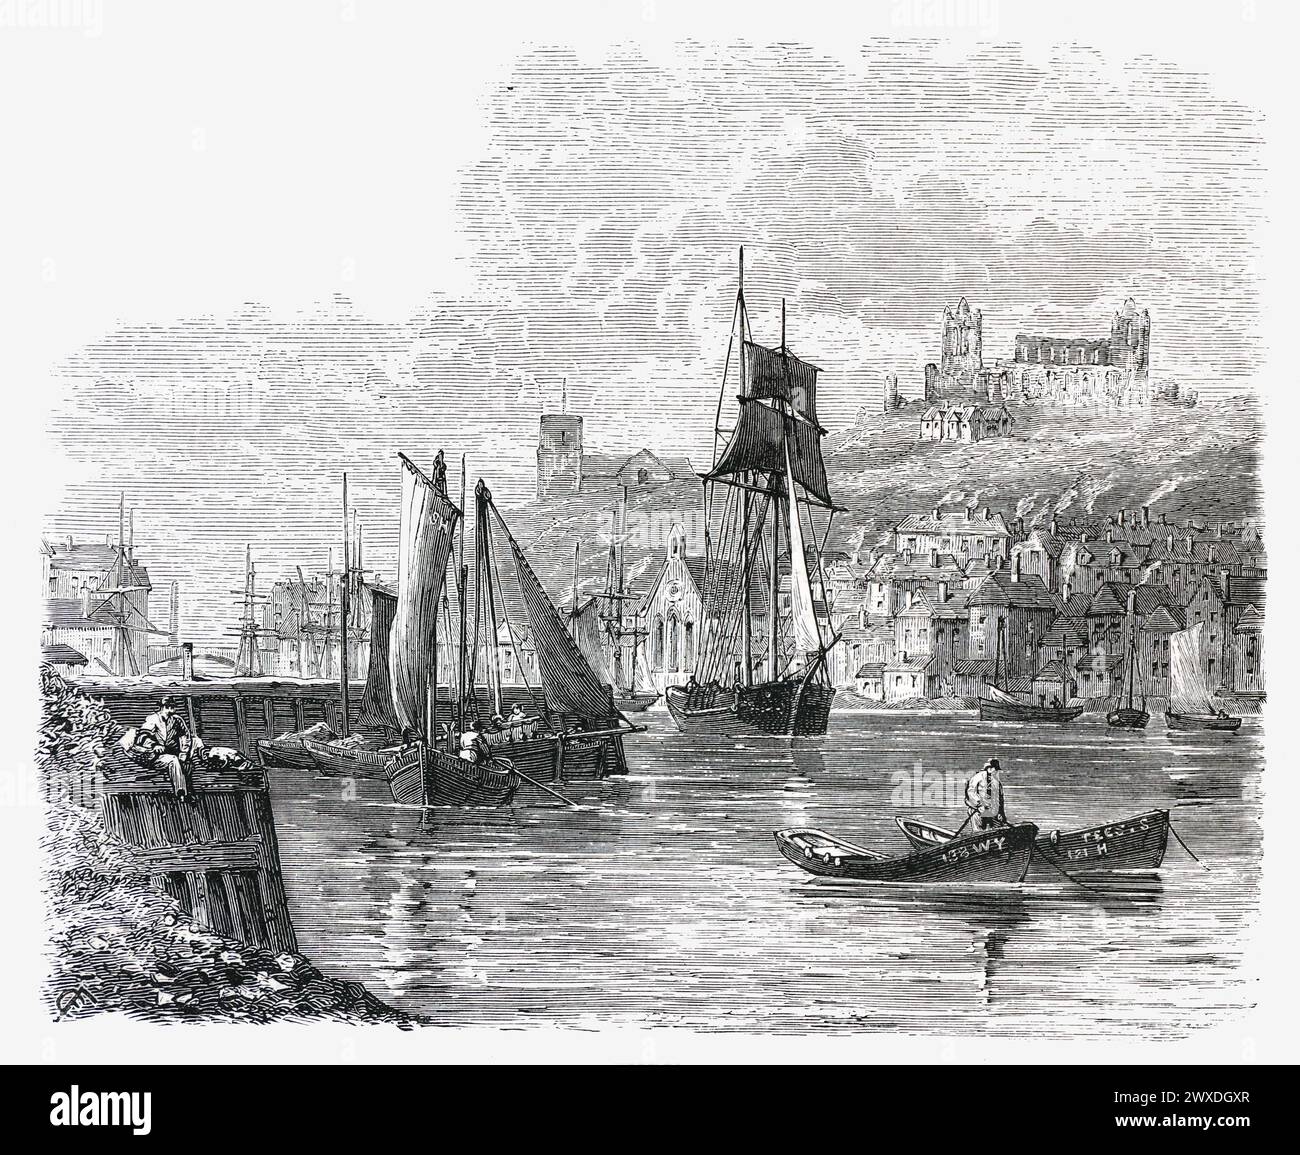 Whitby Harbour, 19. Jahrhundert; Schwarzweiß-Illustration aus dem „Our Own Country“, herausgegeben von Cassell, Petter, Galpin & Co. Ende des 19. Jahrhunderts. Stockfoto